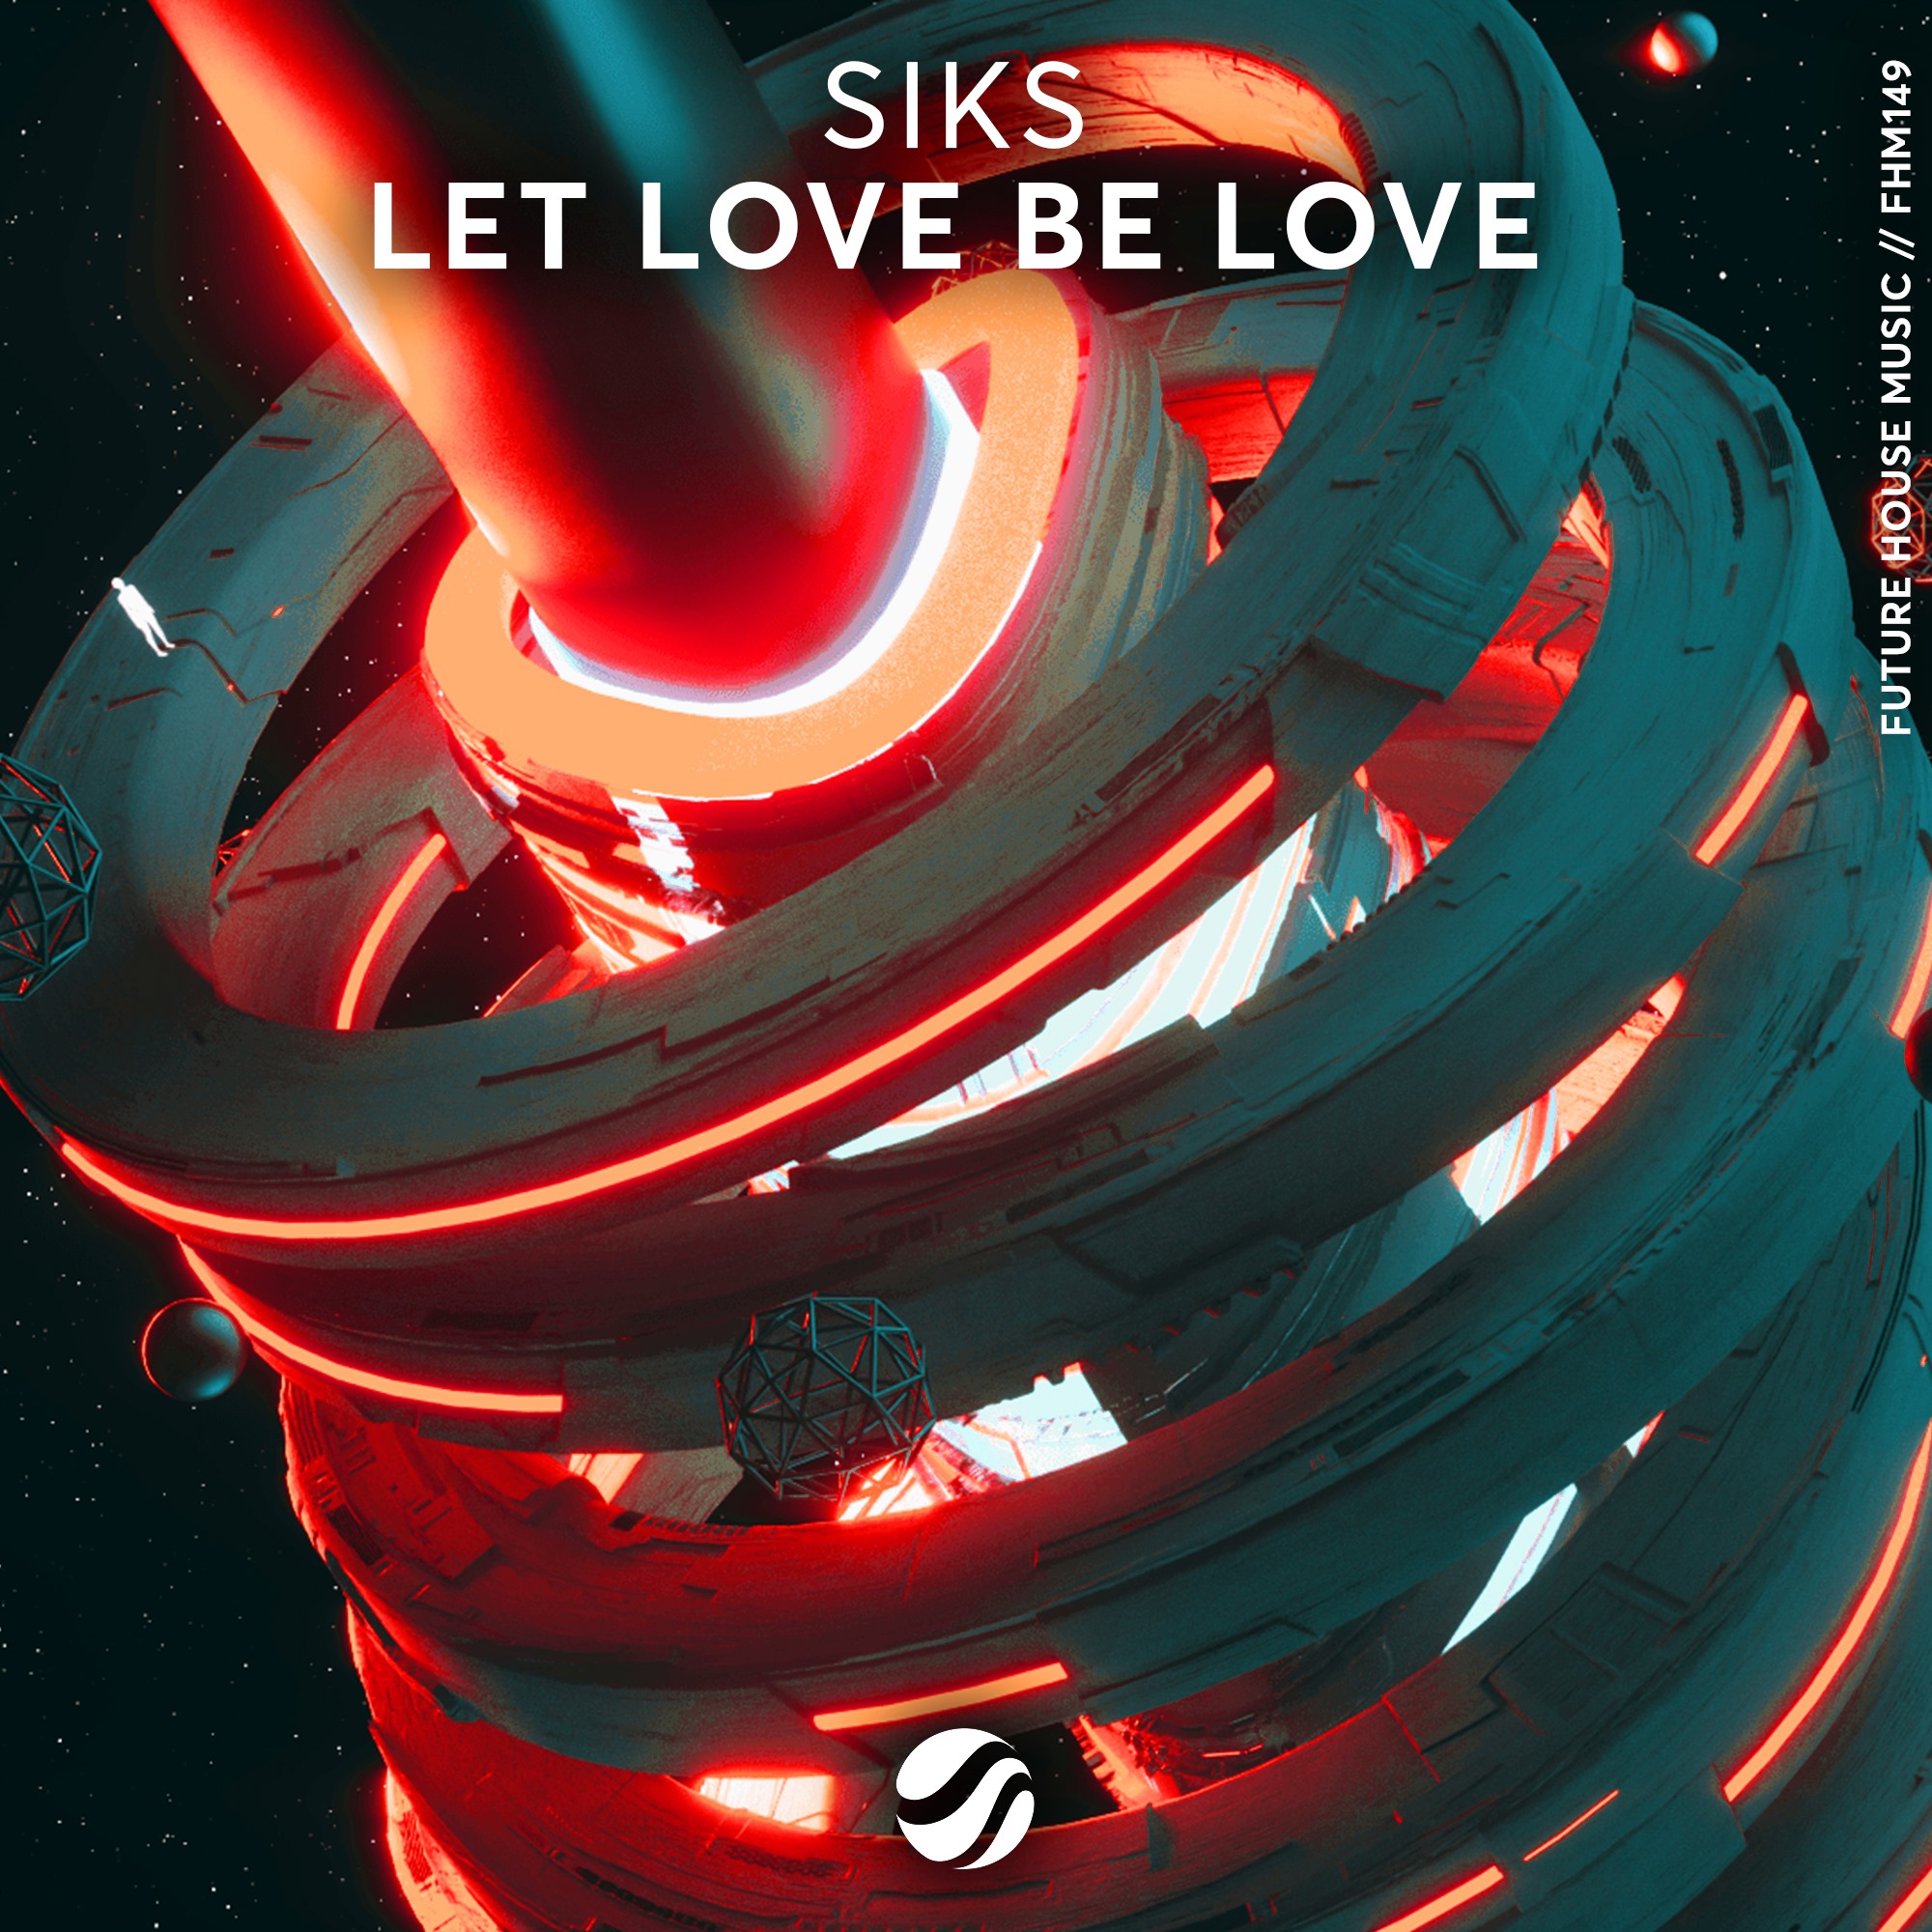 cover de "Let love be love" par Siks !